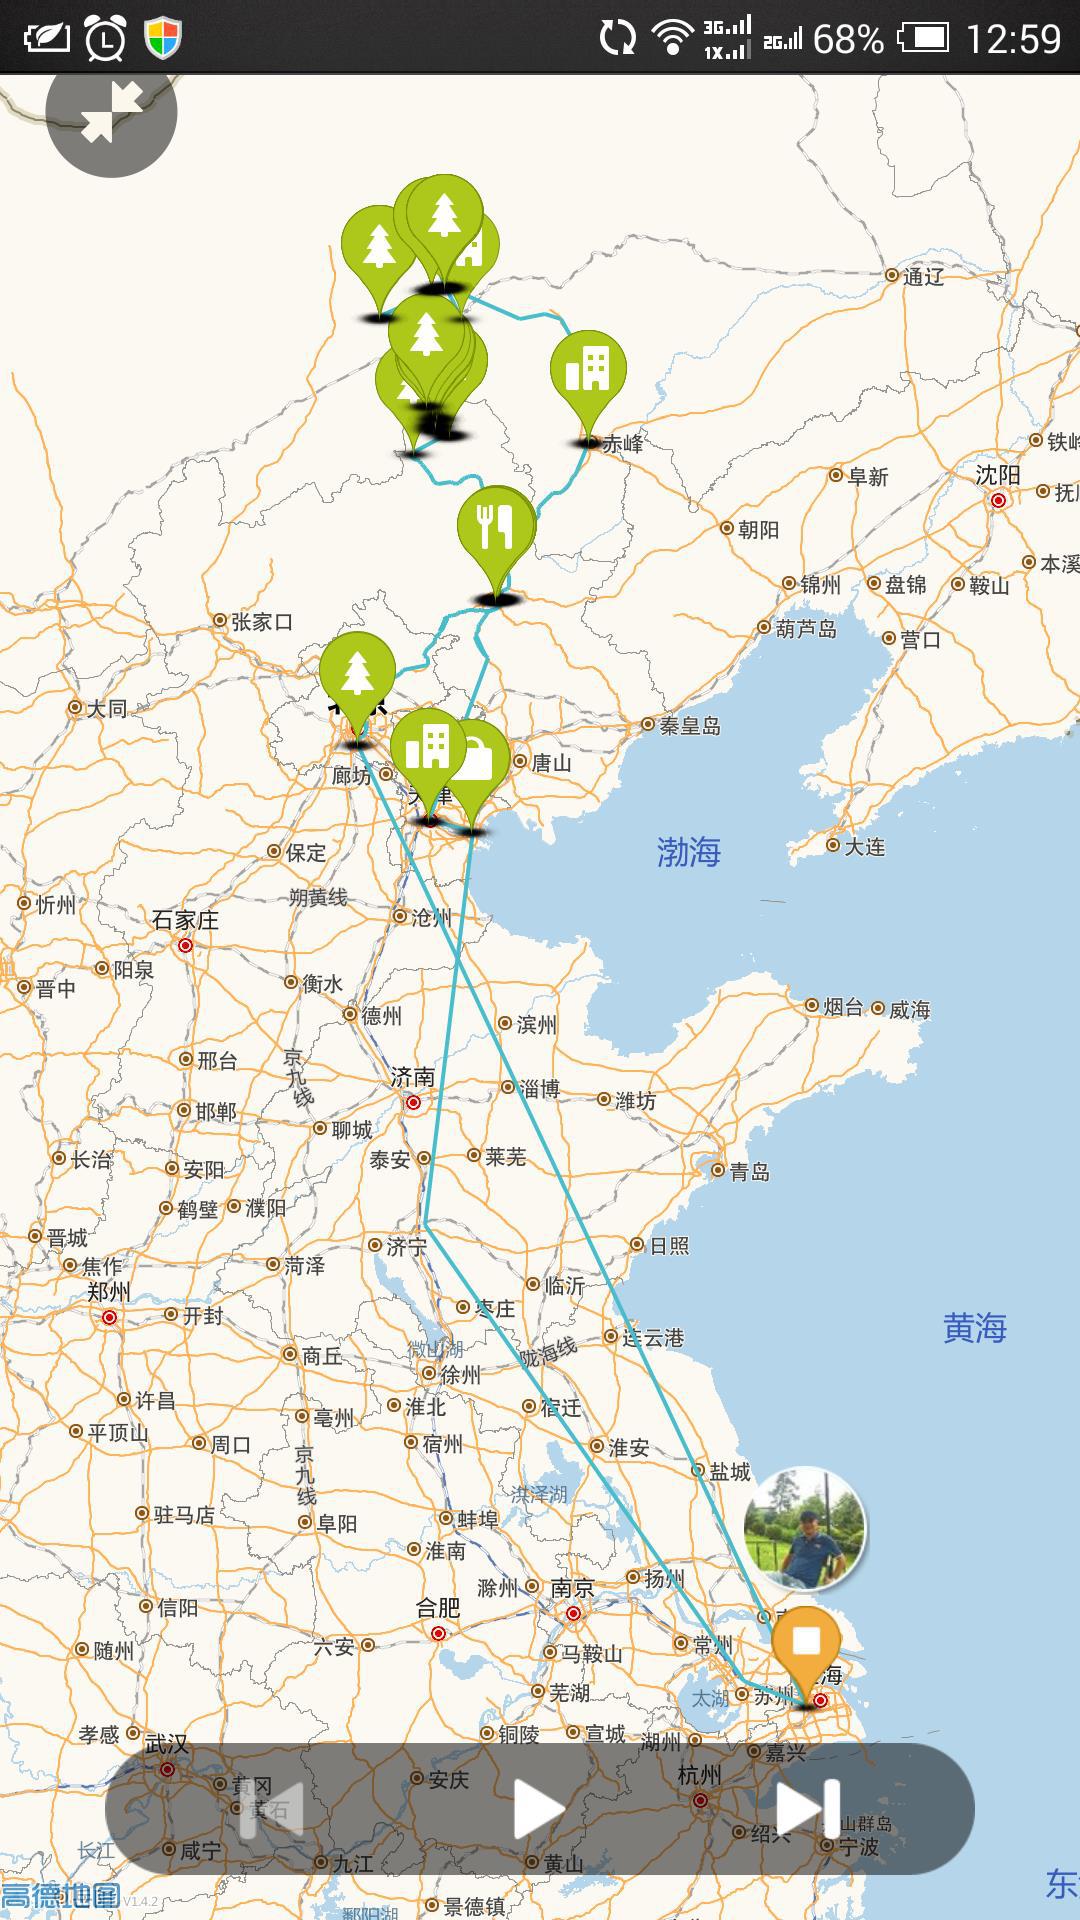 现在虹桥火车站搭乘g106,只要5个小时就可以到达天津了.图片